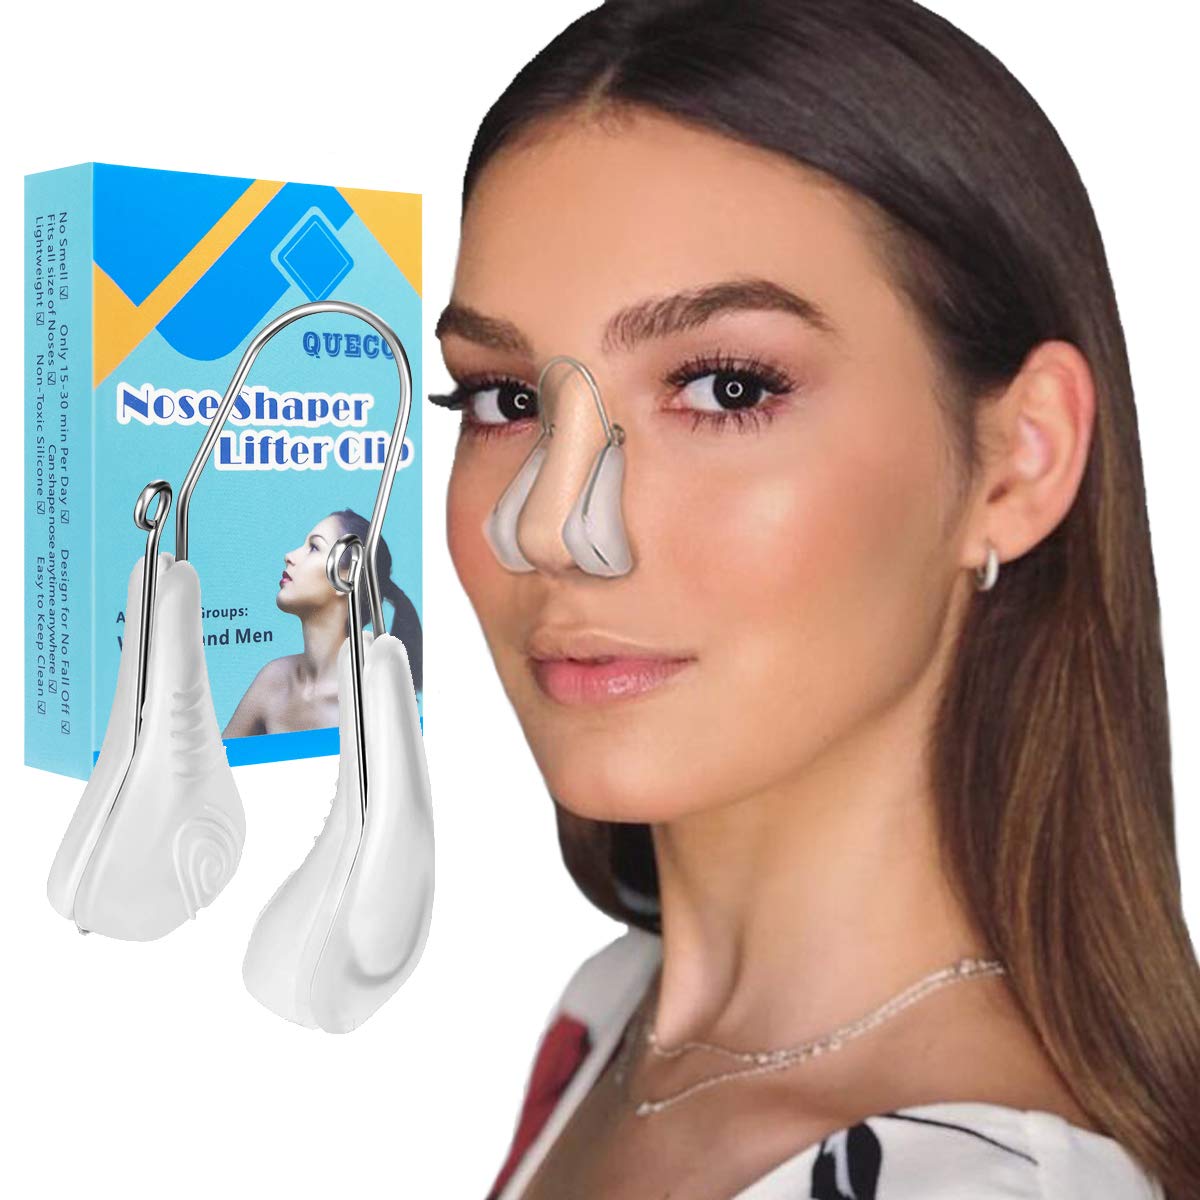 Plastic Nose Clip For Straightening The Bridge Of The Nose And Raising It, nose Bridge Clip Nose Slimmer Clip Nose Up Straightener Straightener  Correct